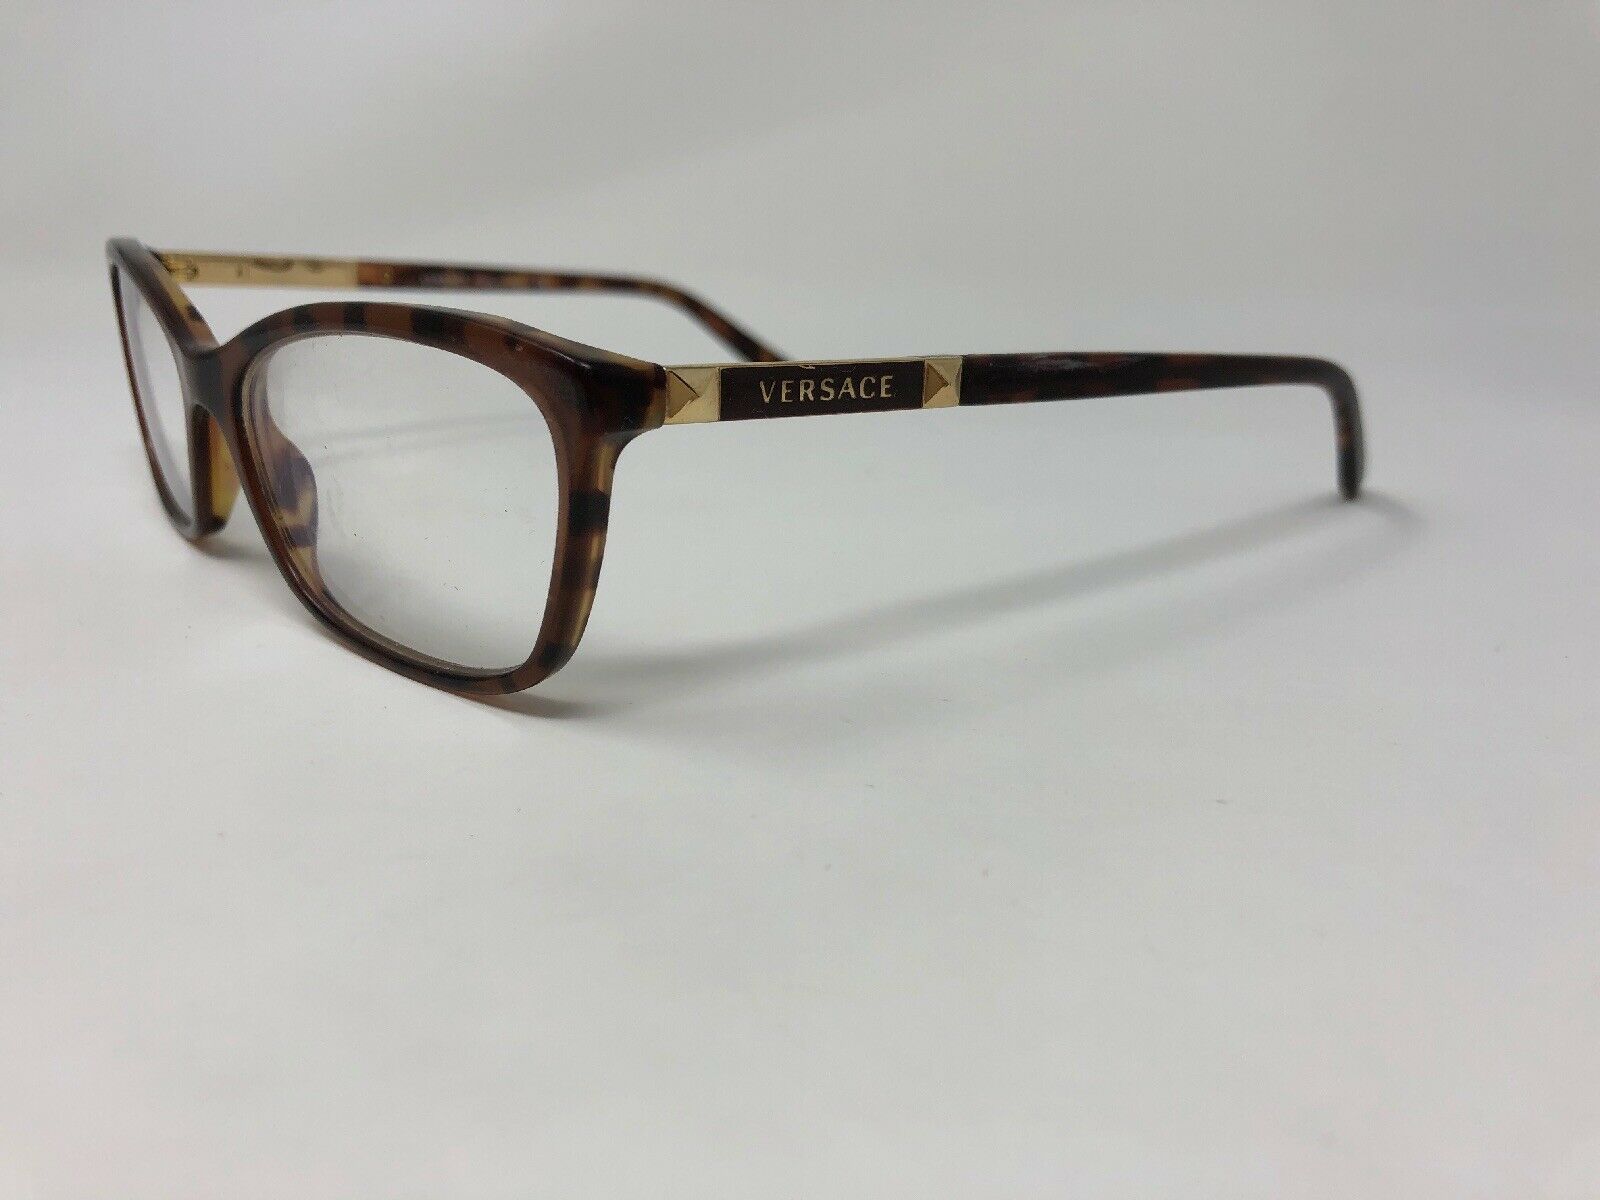 VERSACE Eyeglasses Frame Italy MOD.3186 5077 52-16-140 Havana Brown ...